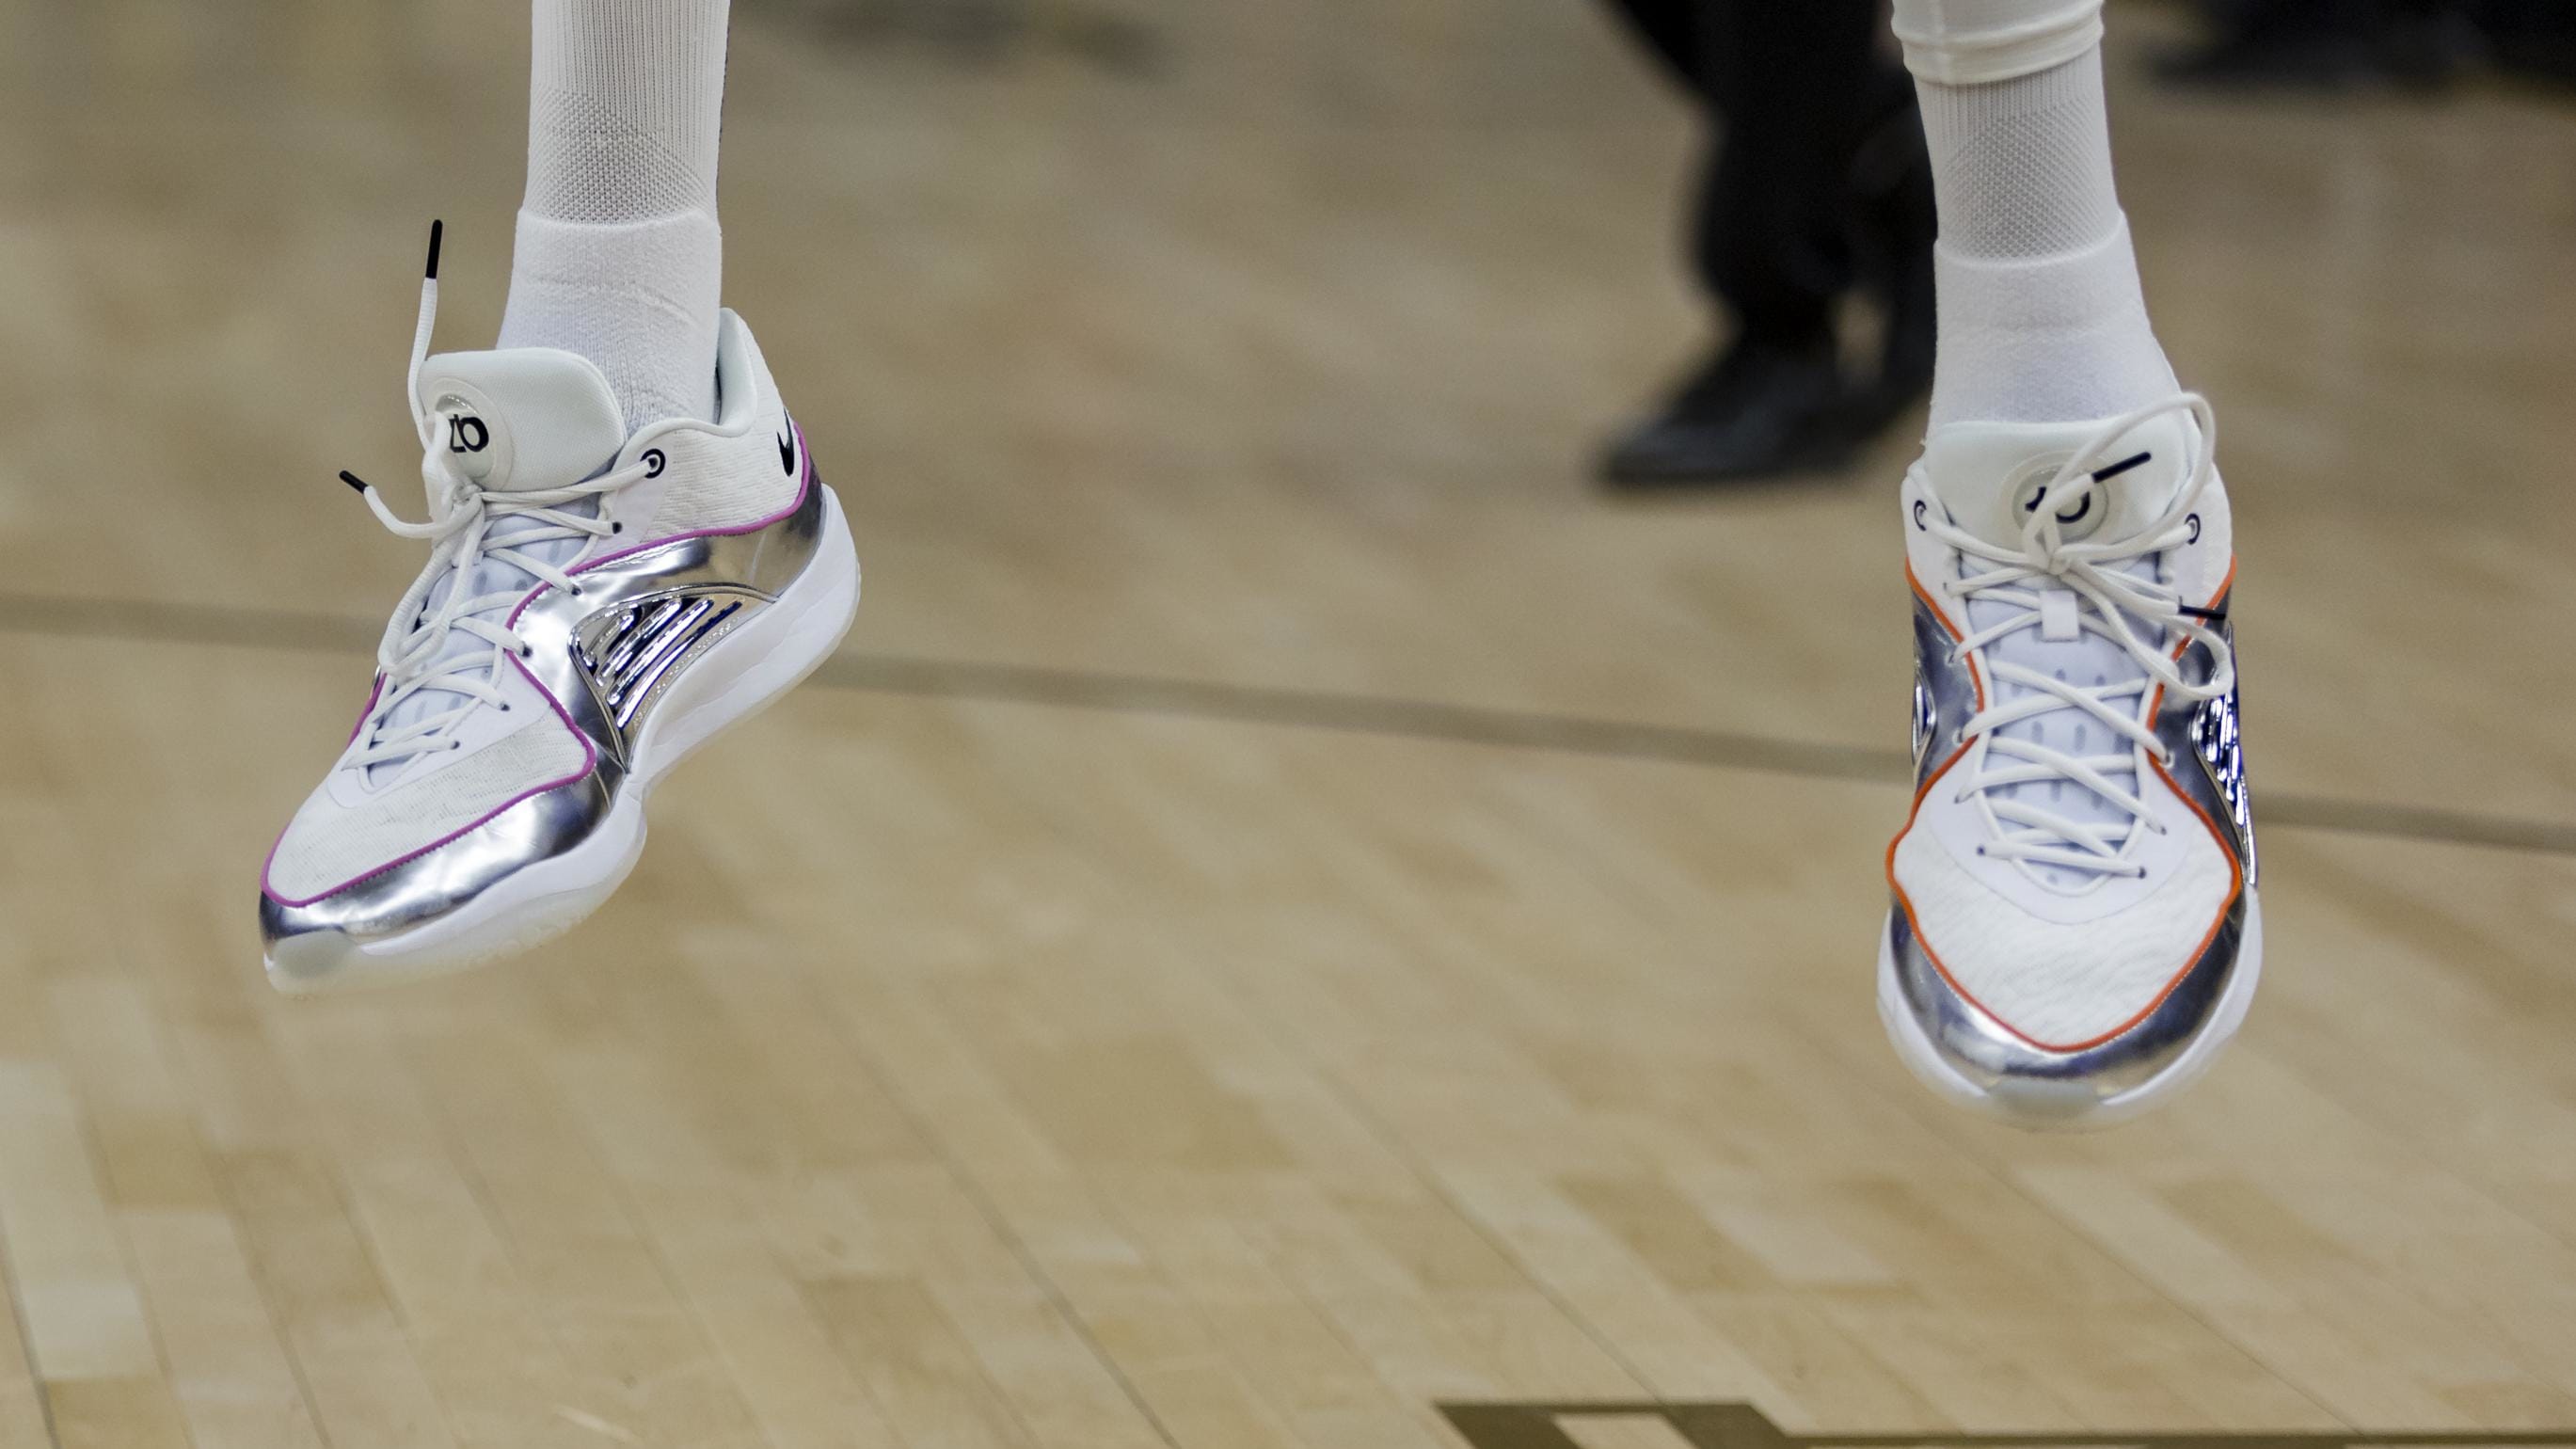 L'attaquant des Phoenix Suns, Kevin Durant, porte des baskets Nike argentées.